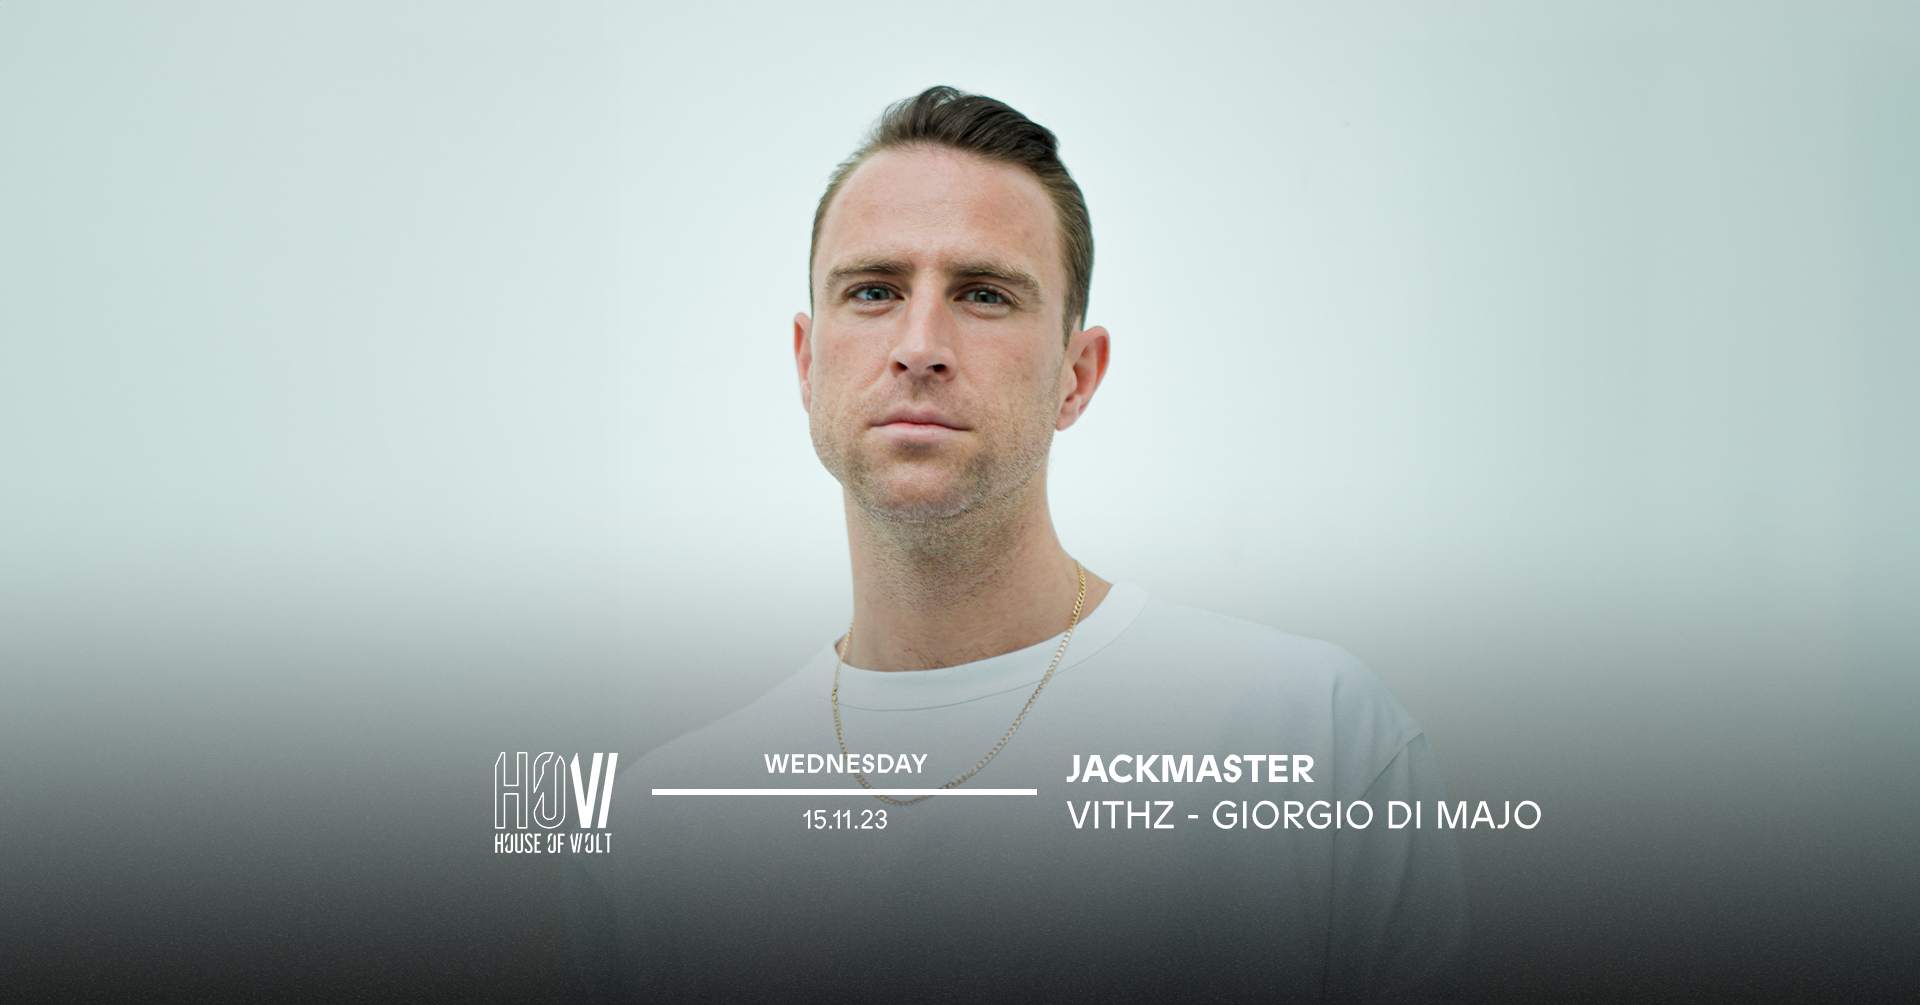 Jackmaster + Vithz & Giorgio Di Majo - フライヤー裏